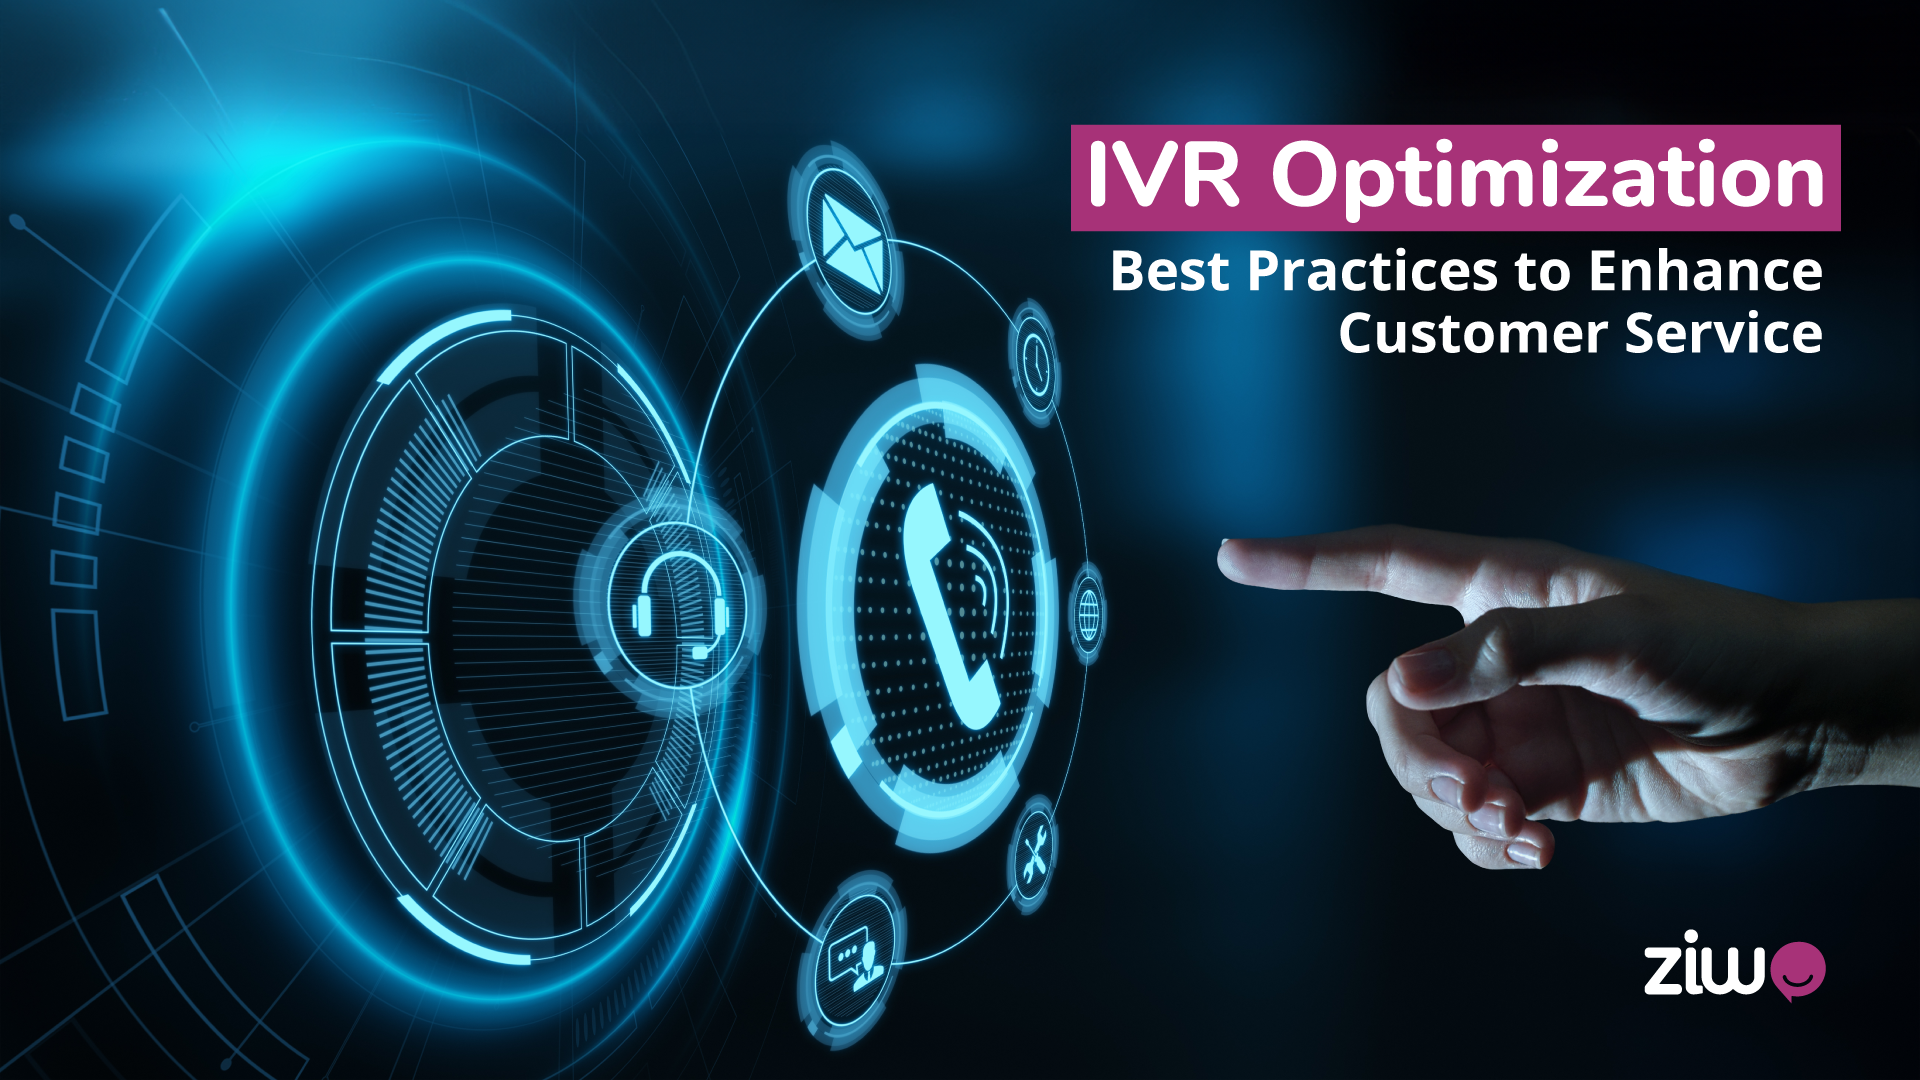 IVR Optimization Best Practices